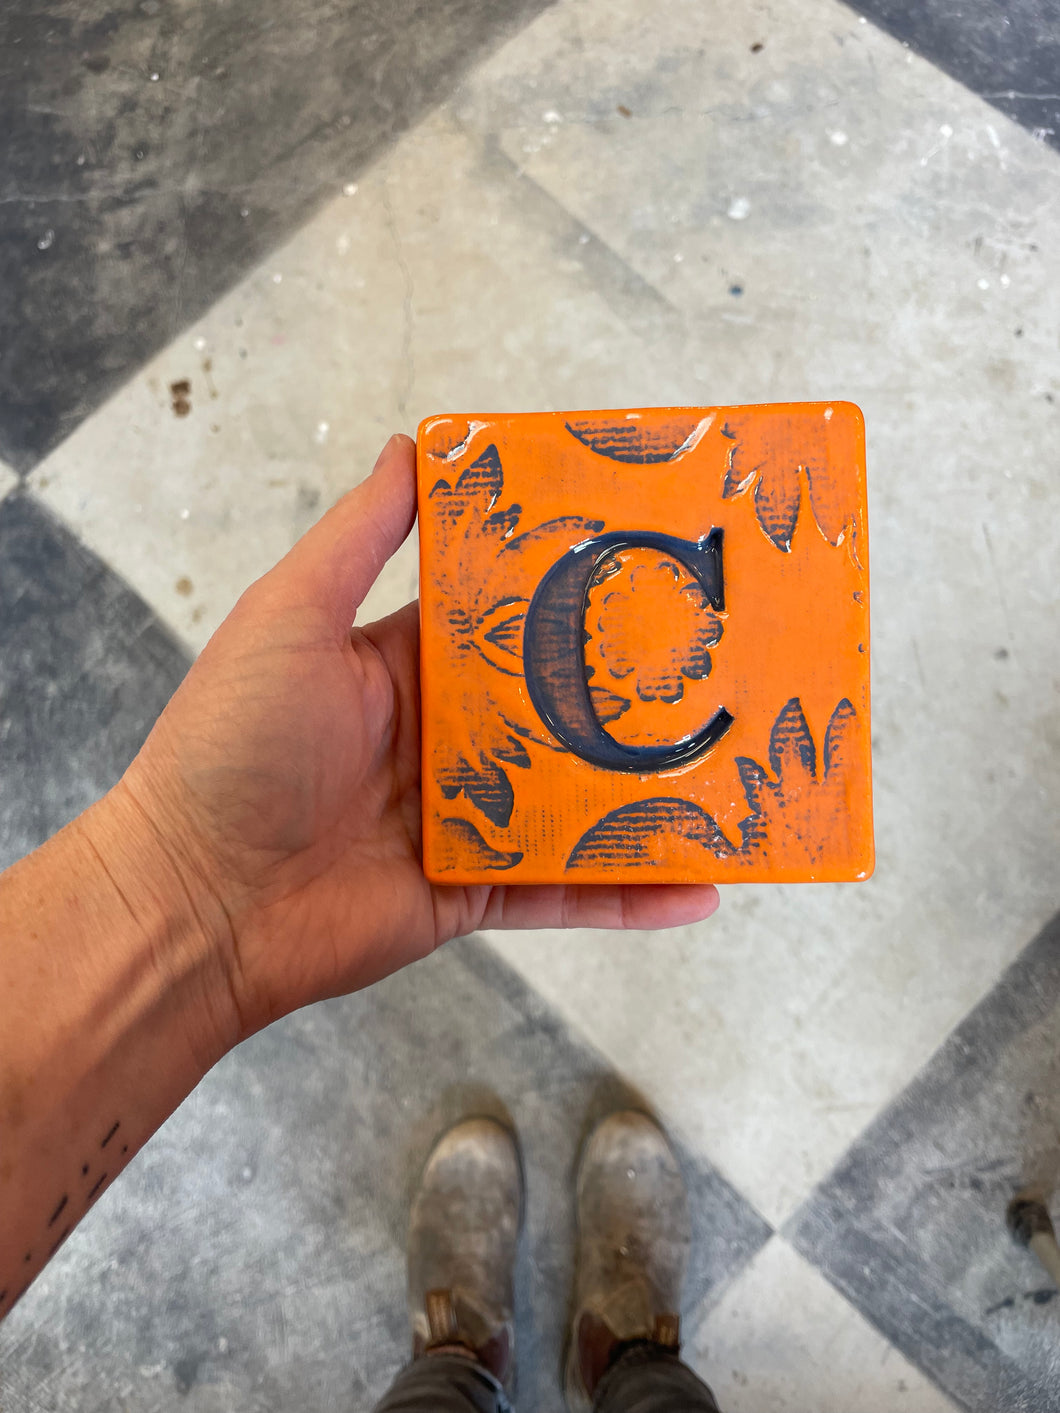 Letter C ceramic tile